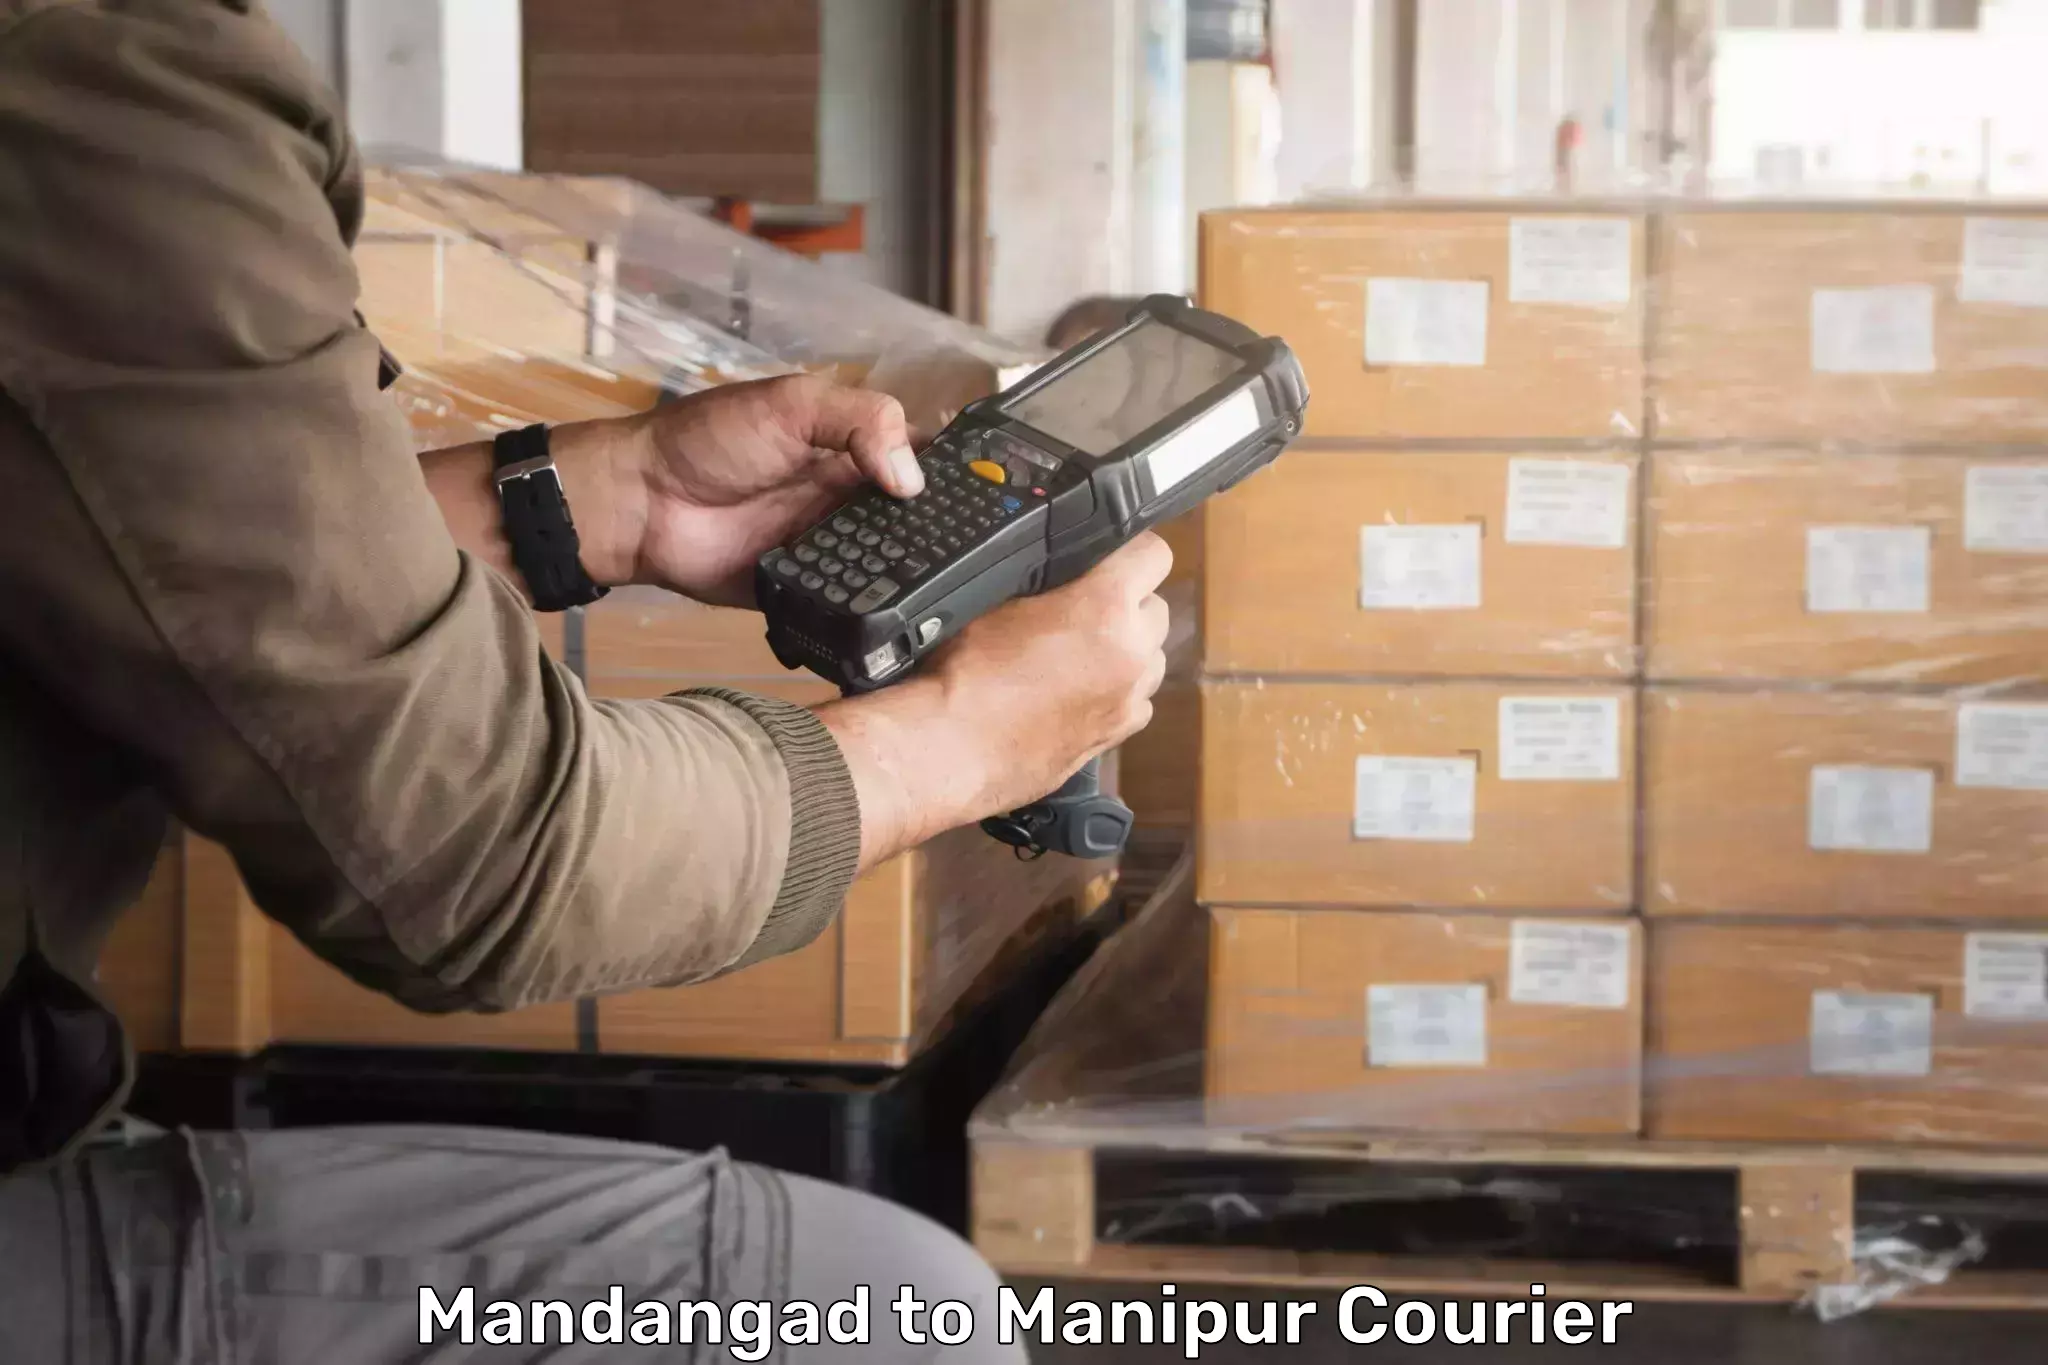 Seamless shipping service Mandangad to IIIT Senapati